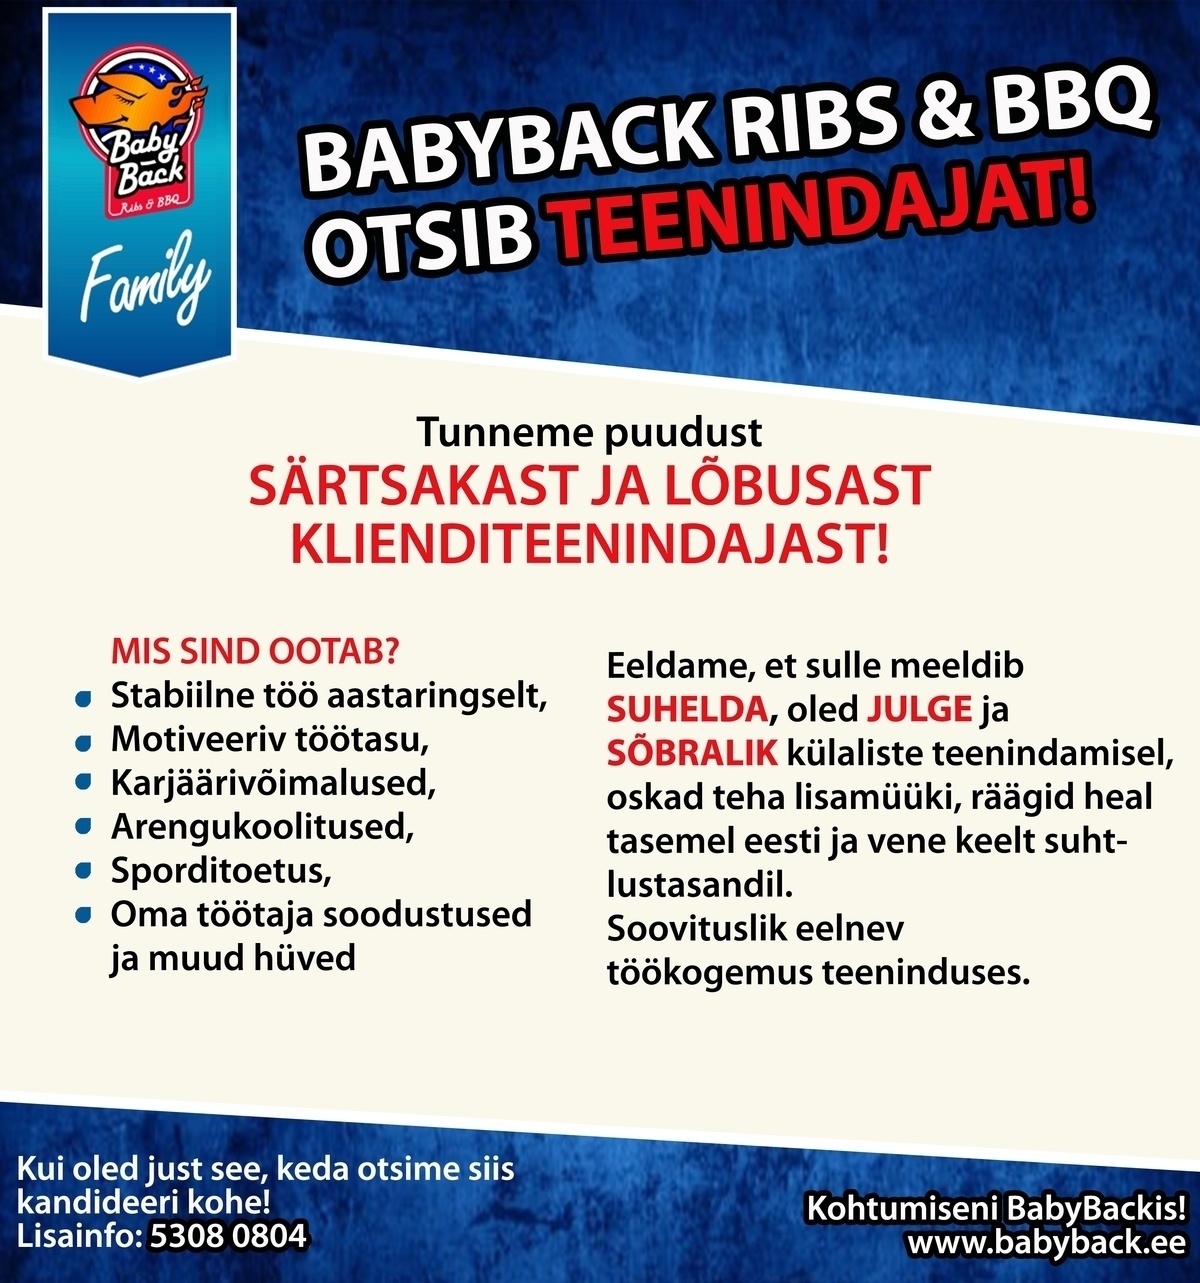 Vellosar Kaubanduse OÜ BabyBack Ribs & BBQ restorani Klienditeenindaja